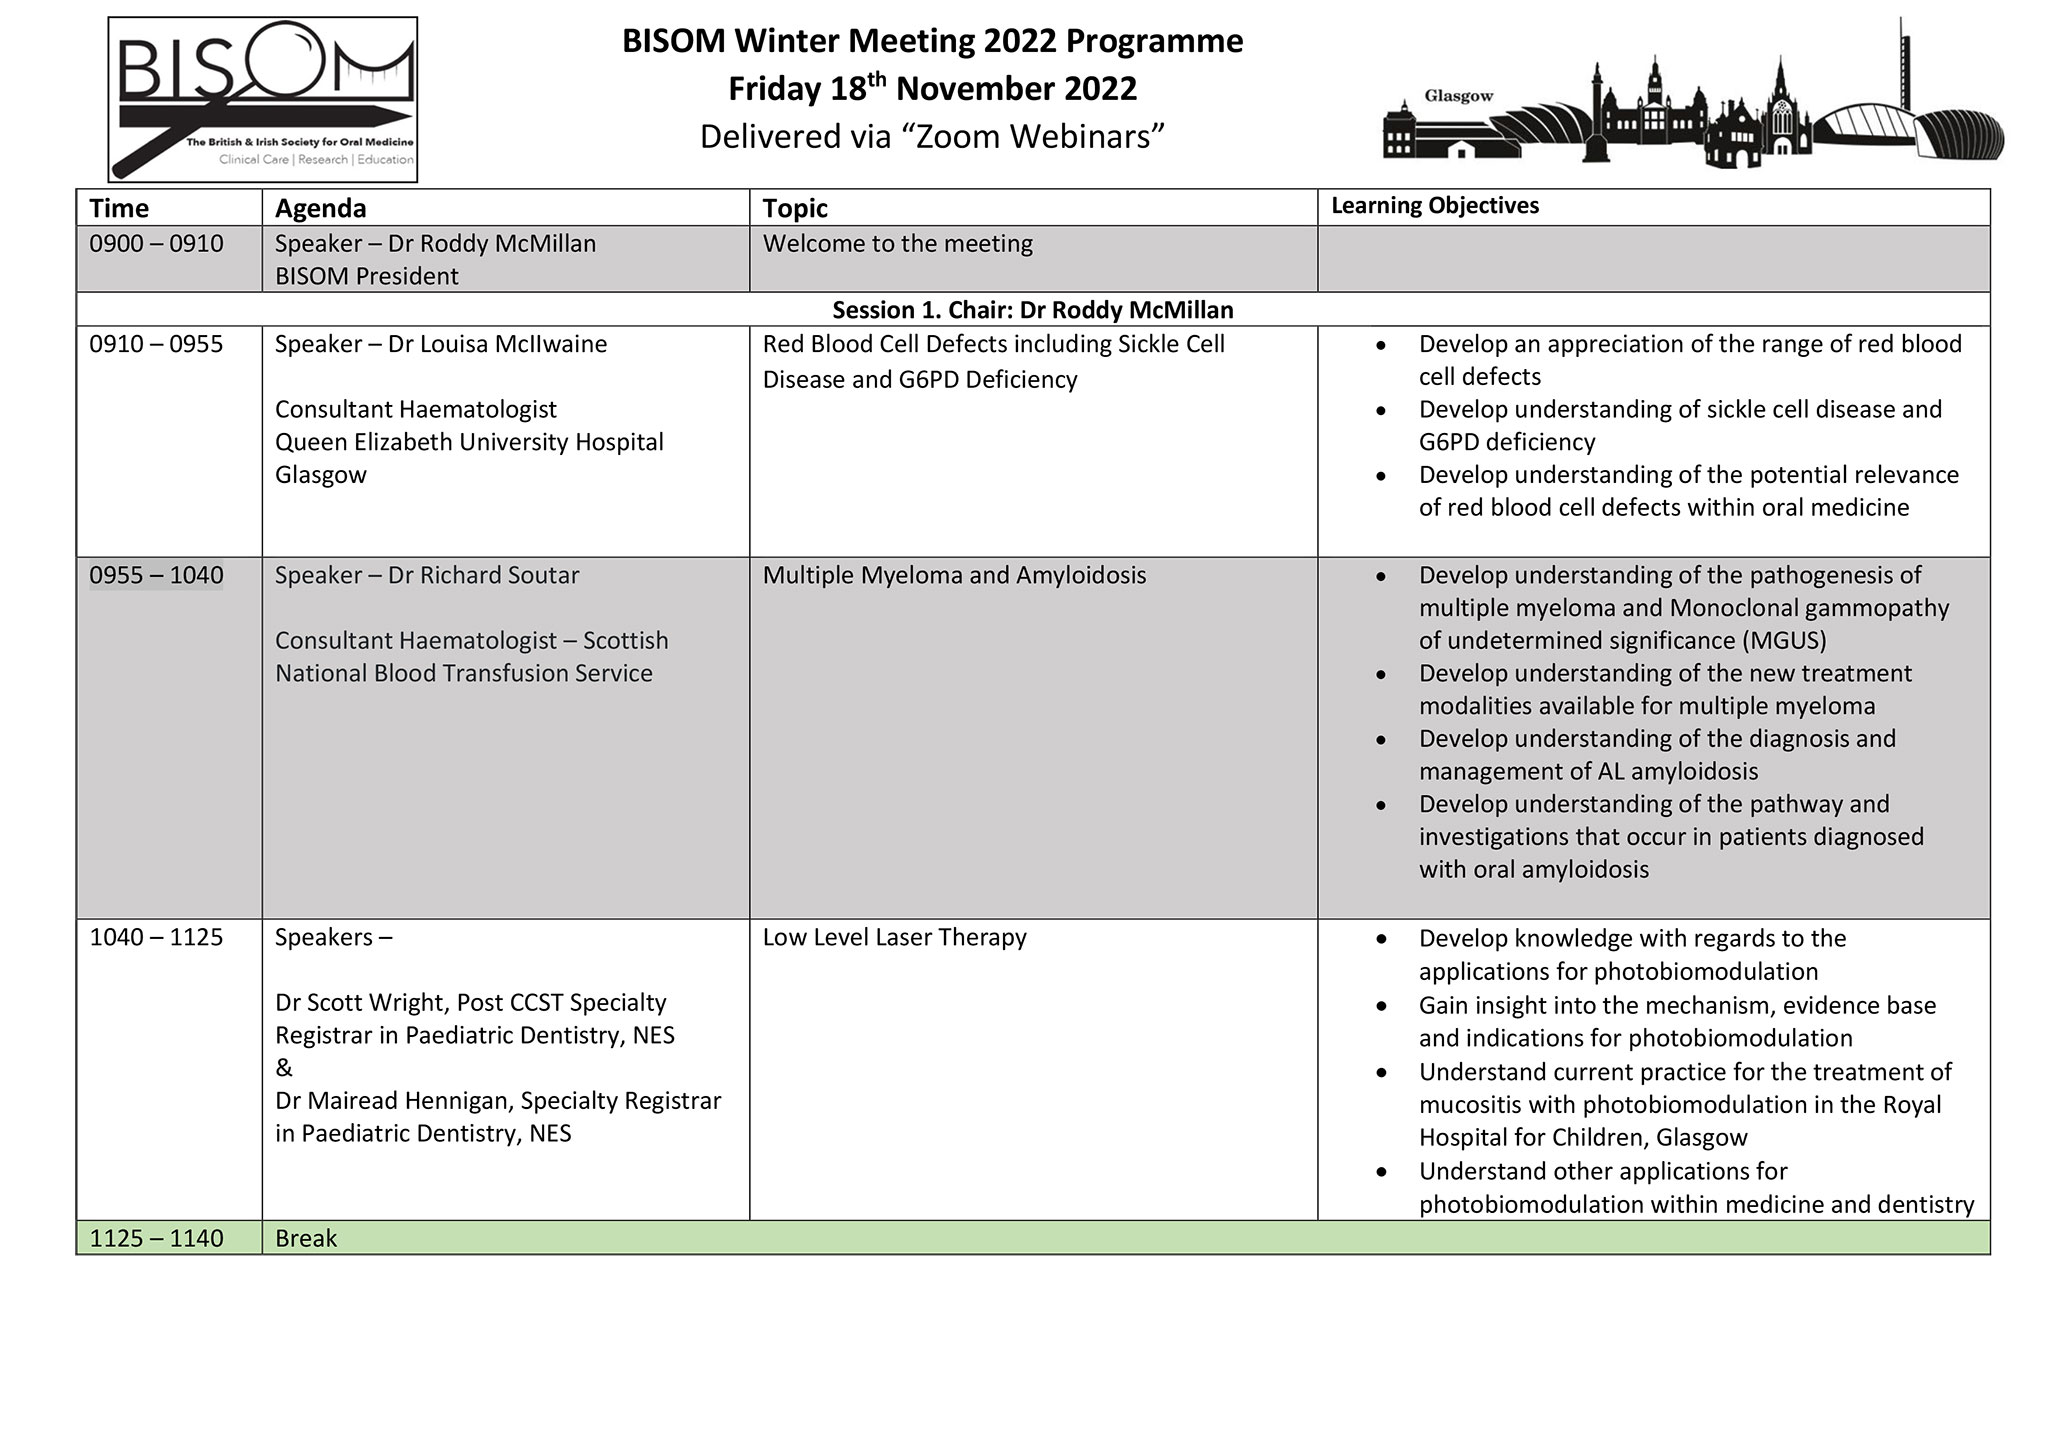 BISOM-Winter-Meeting-2022-Programme-1